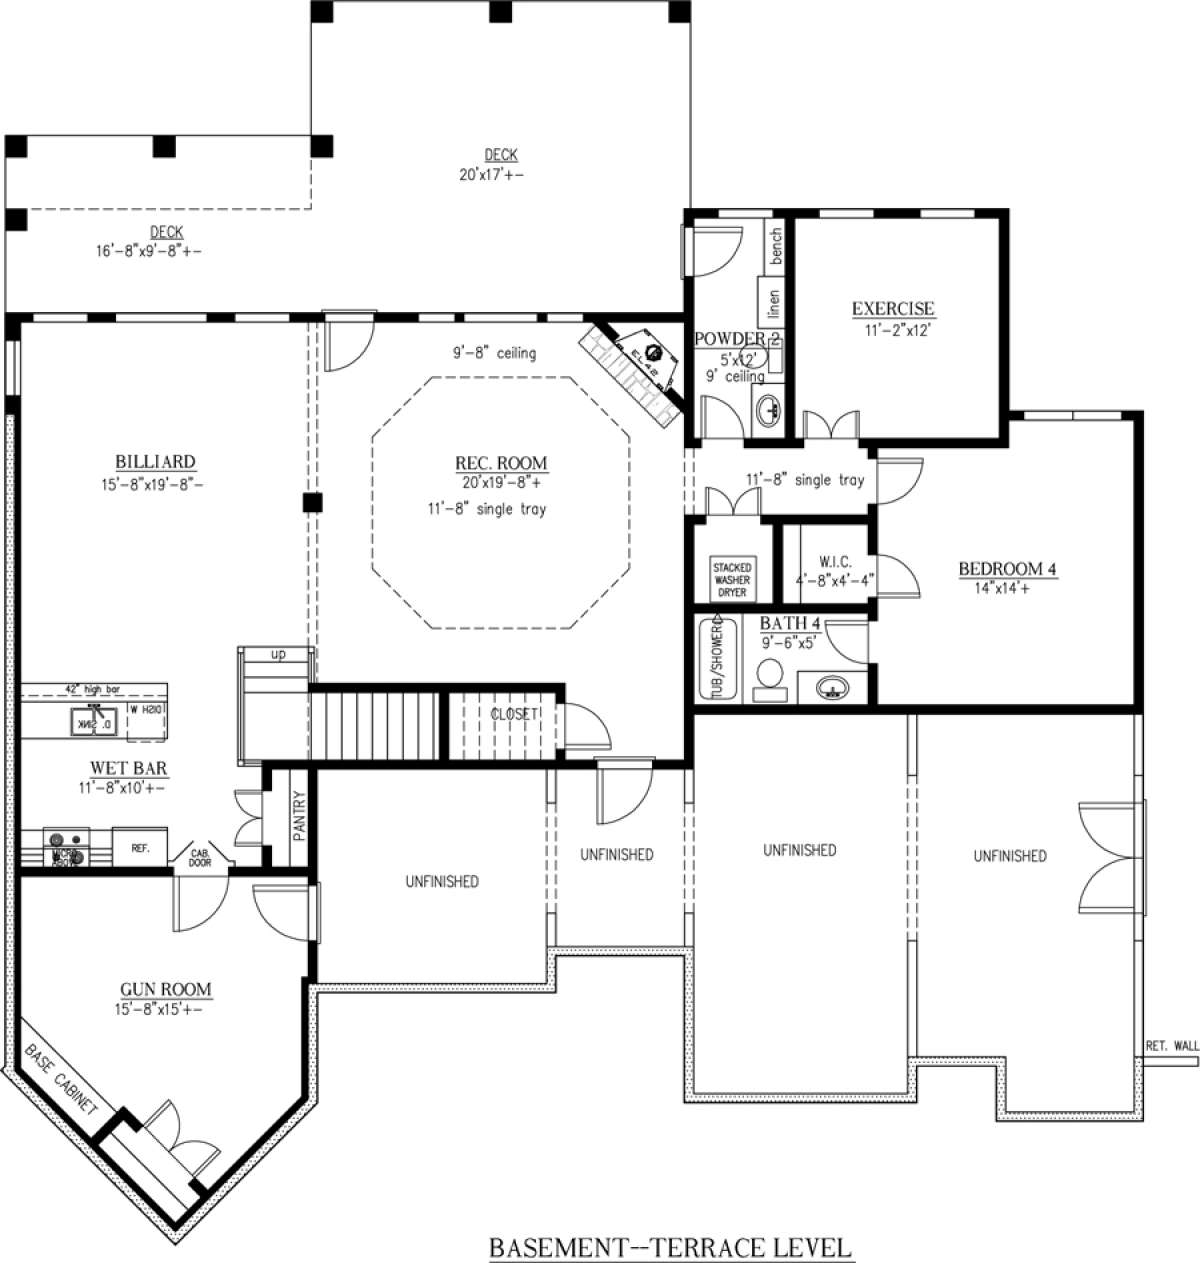 Basement Floor Plan for House Plan #286-00061